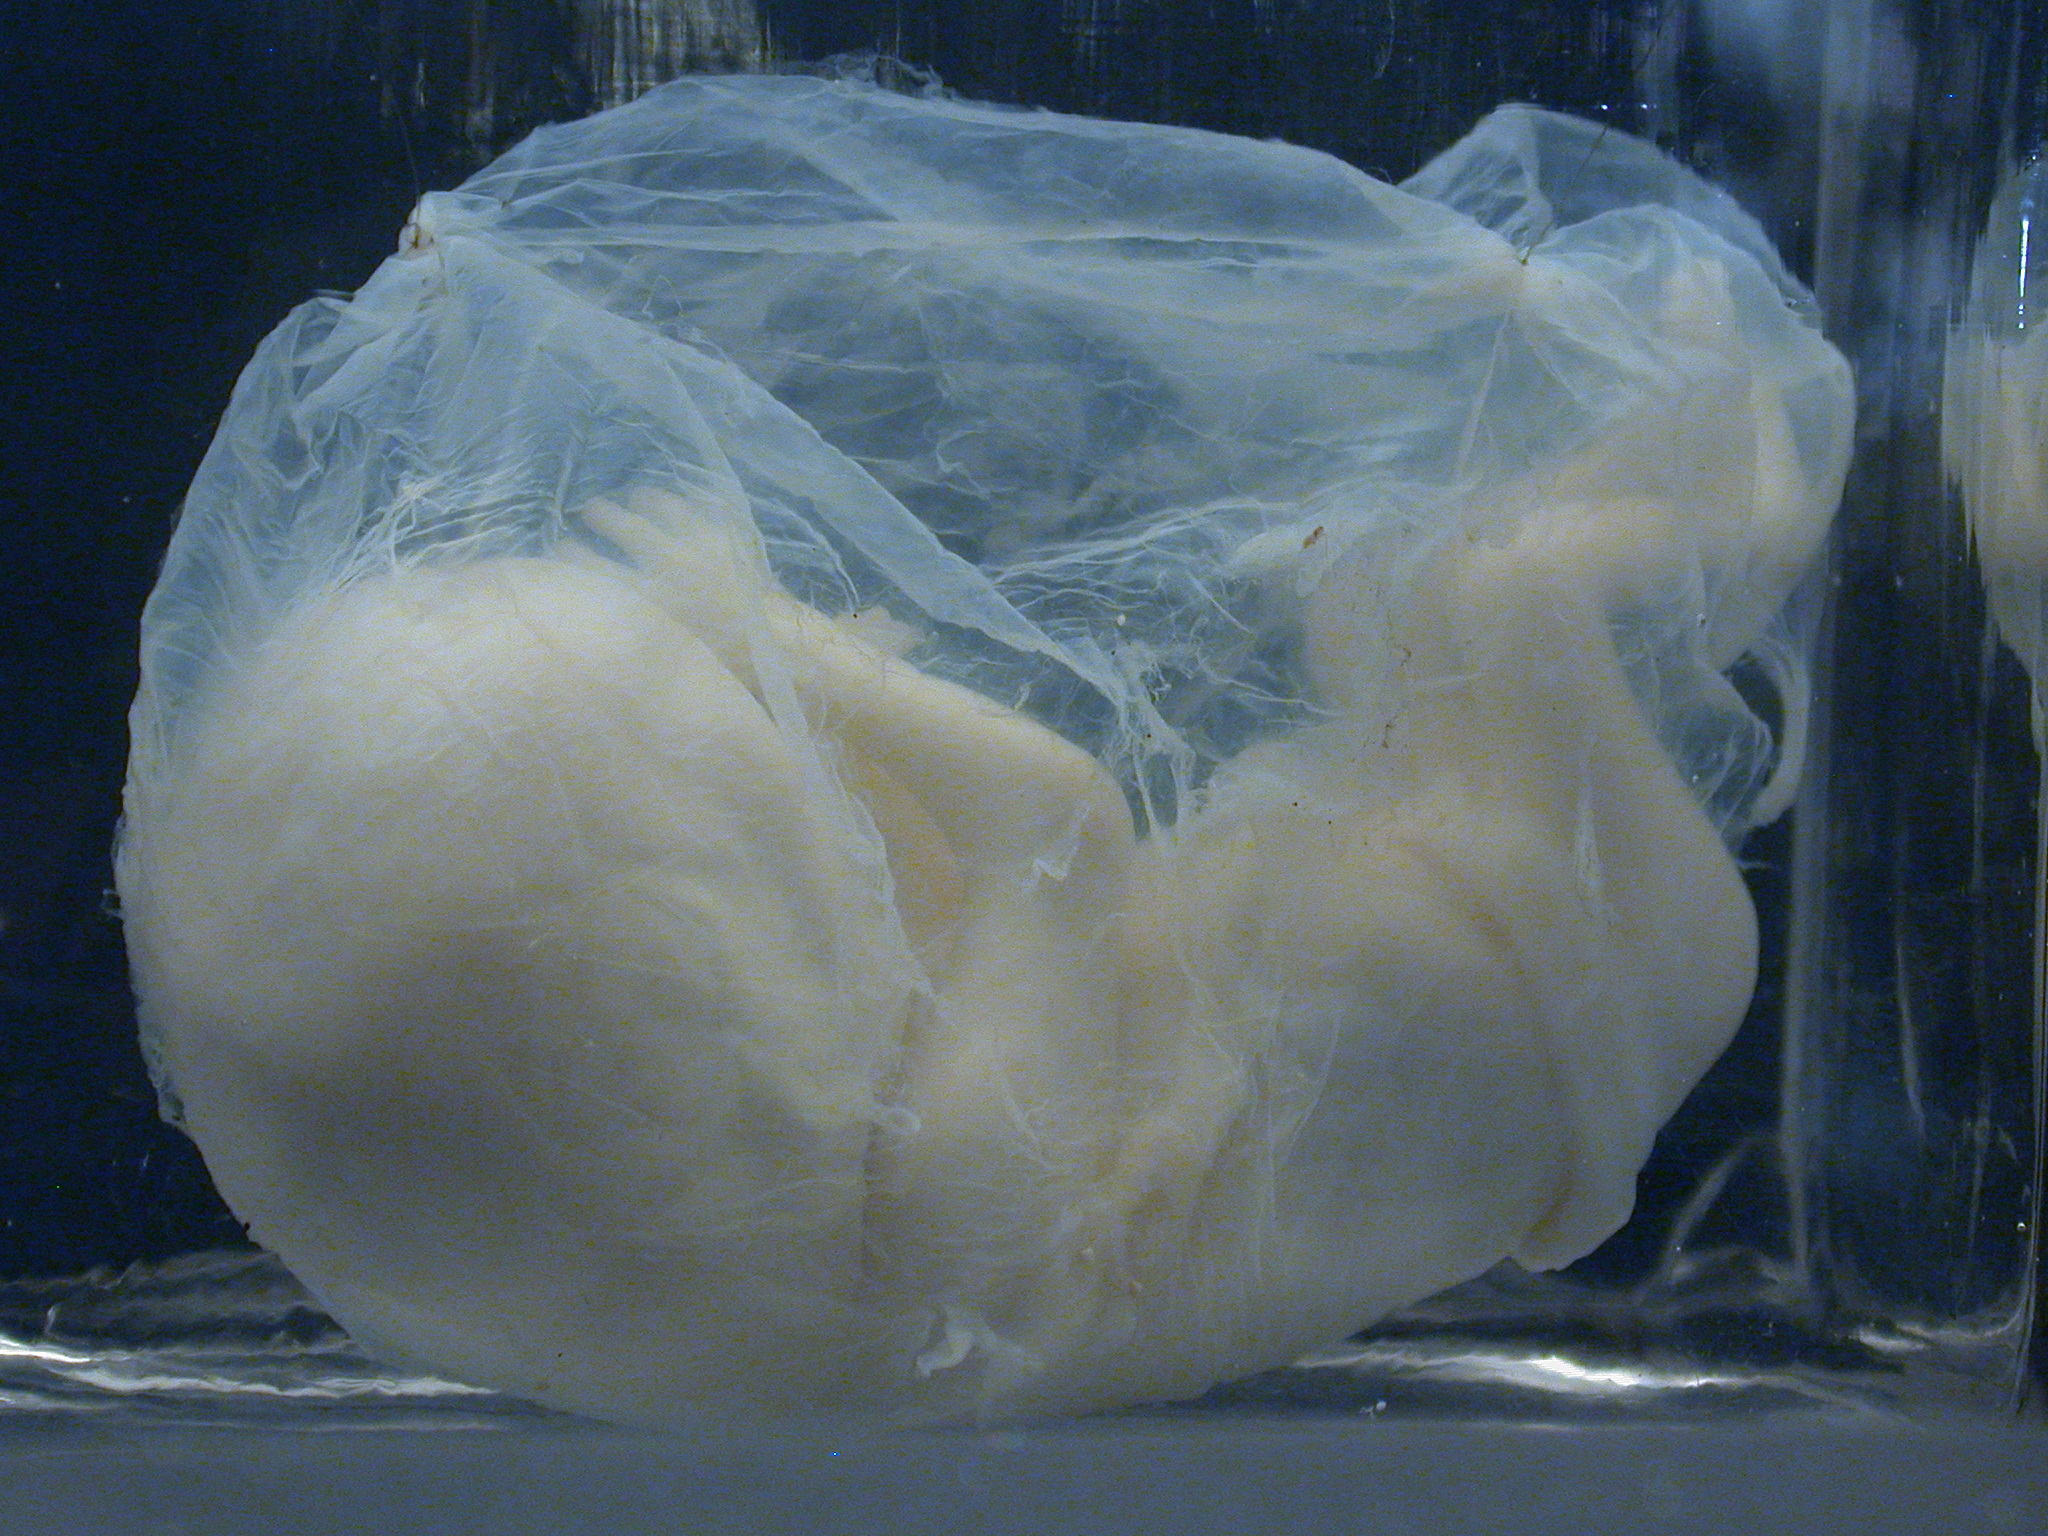 fetus human embryo baby